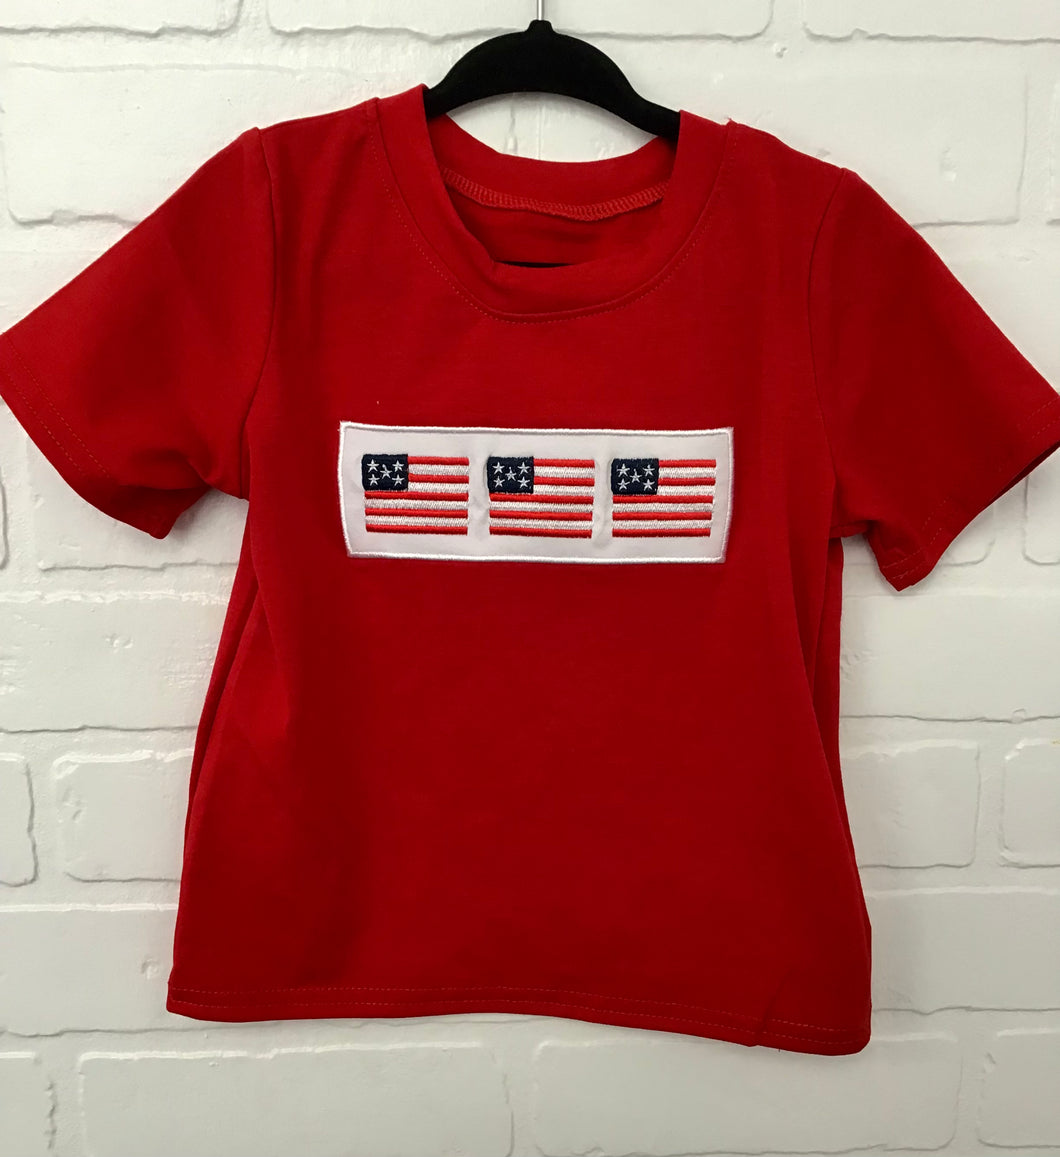 Three Red Flag Shirt